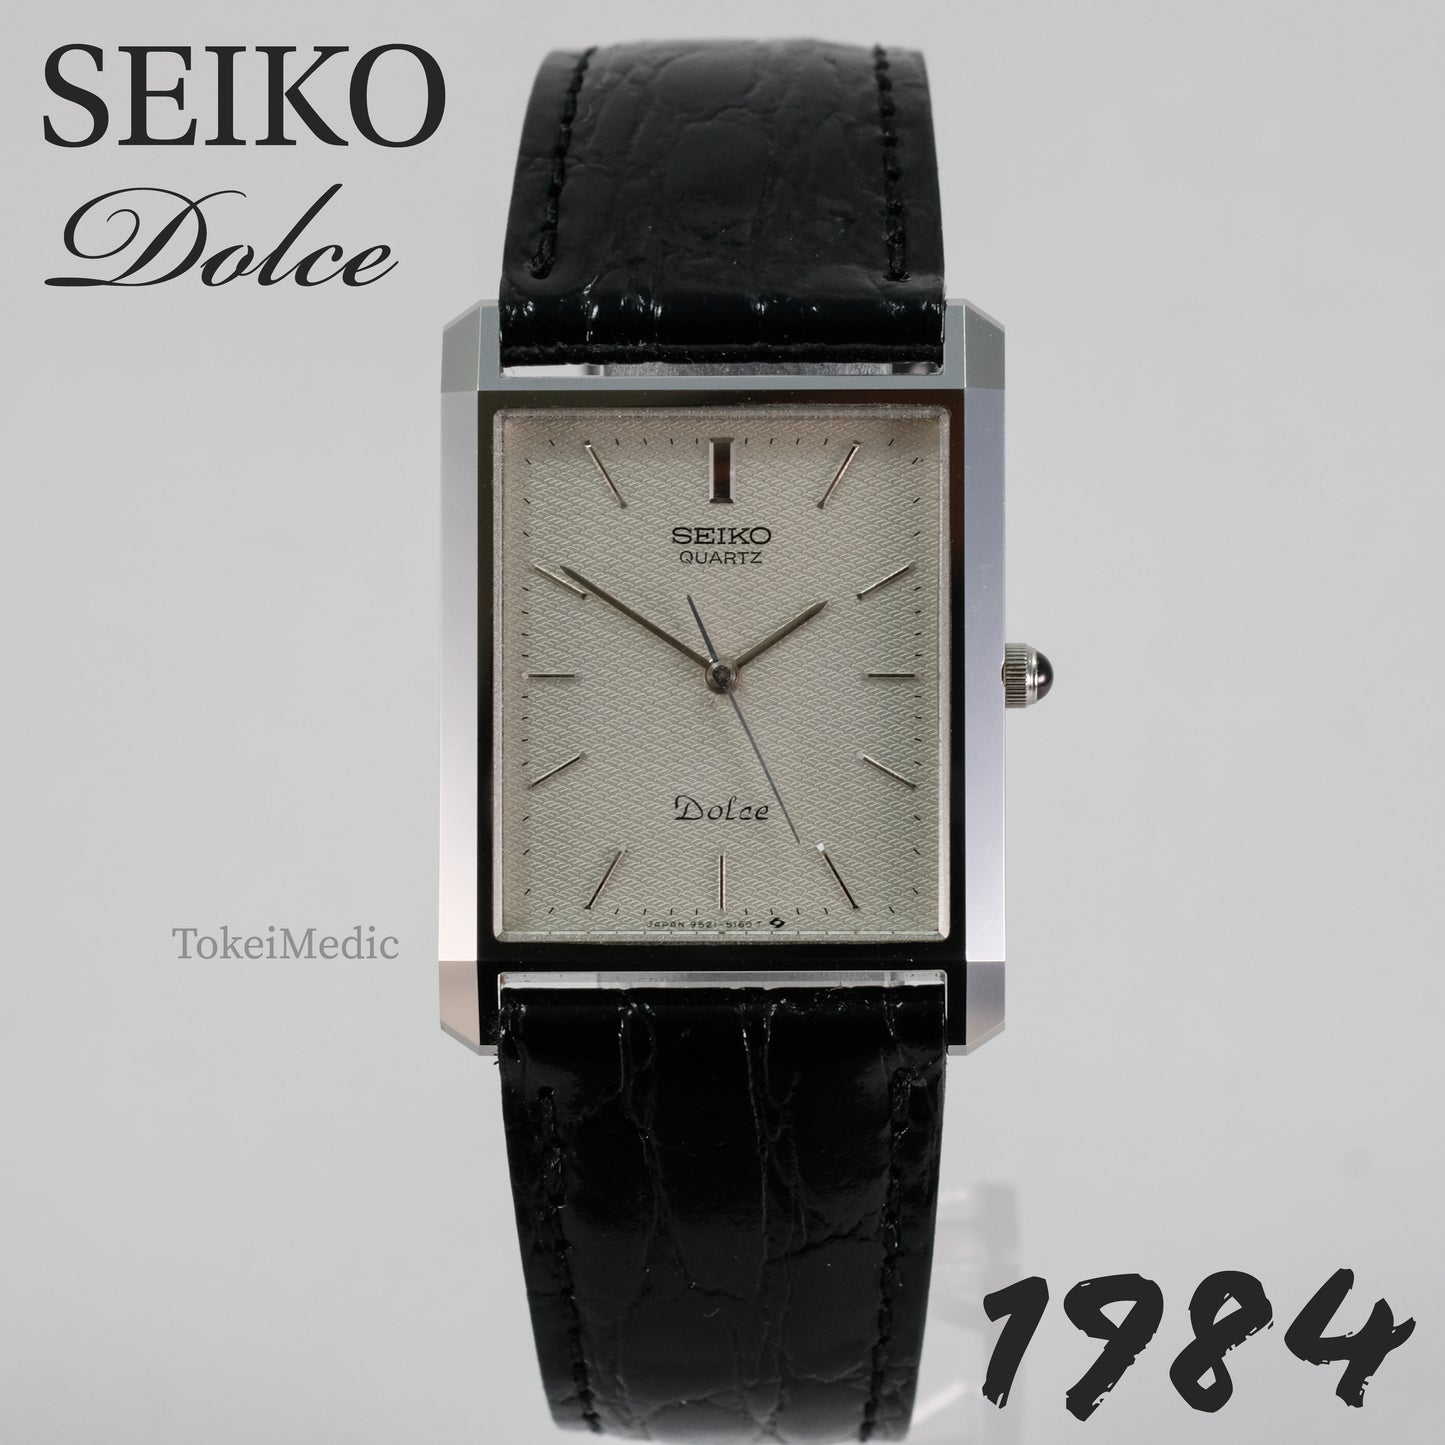 1984 Seiko Dolce 9521-5160